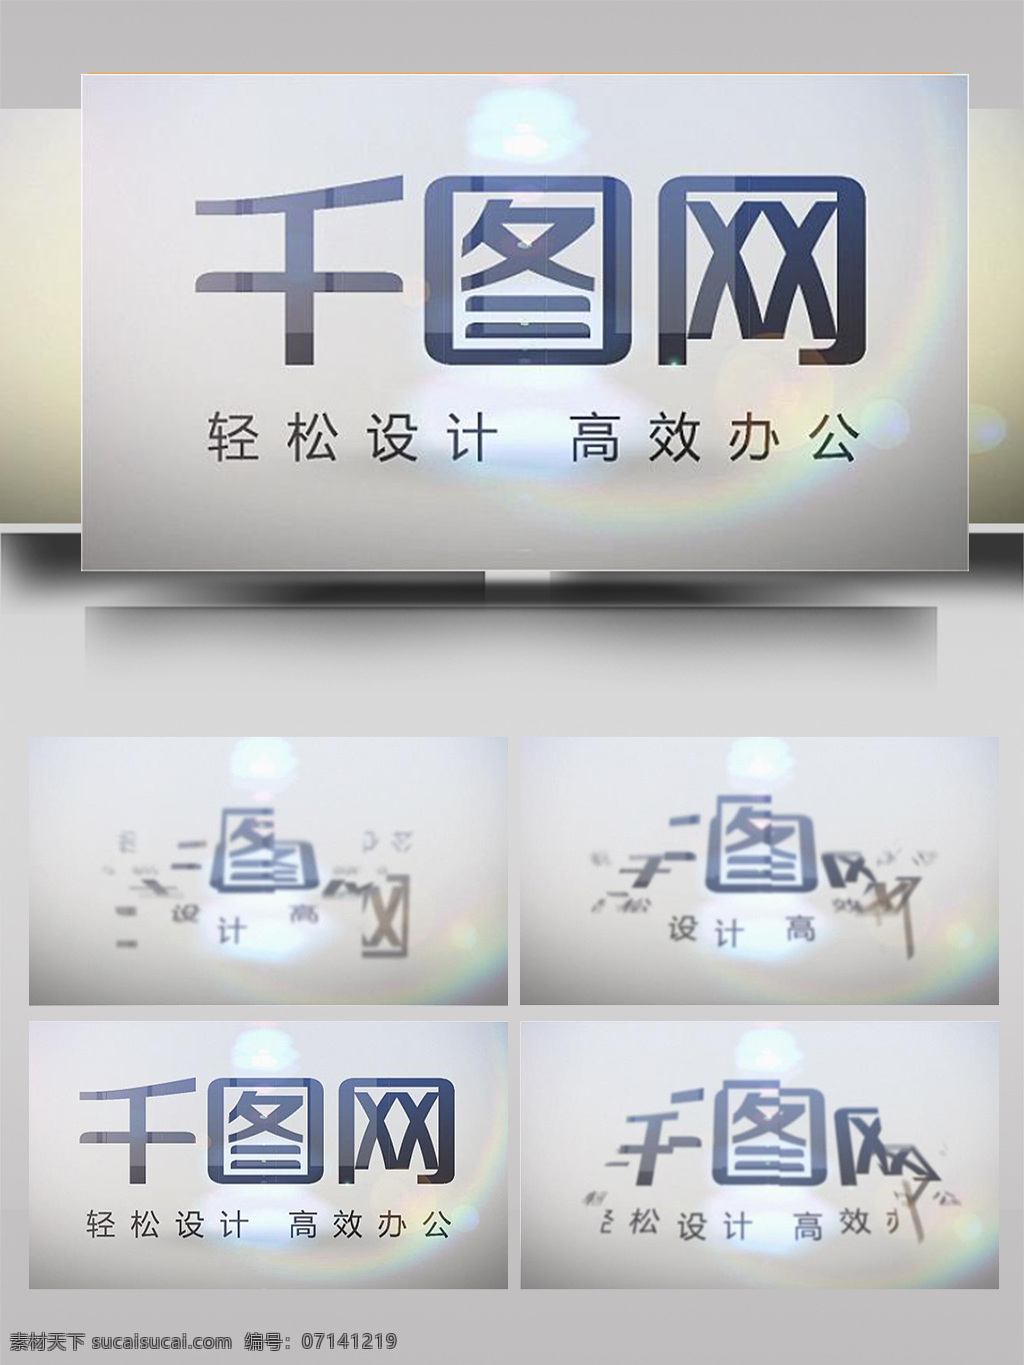 文字 logo 旋转 抖动 动画 ae 模板 立体 彩色 大气 标志 3d标志 简洁 散开 组合 光影 动态 展示 片头 转场 过度